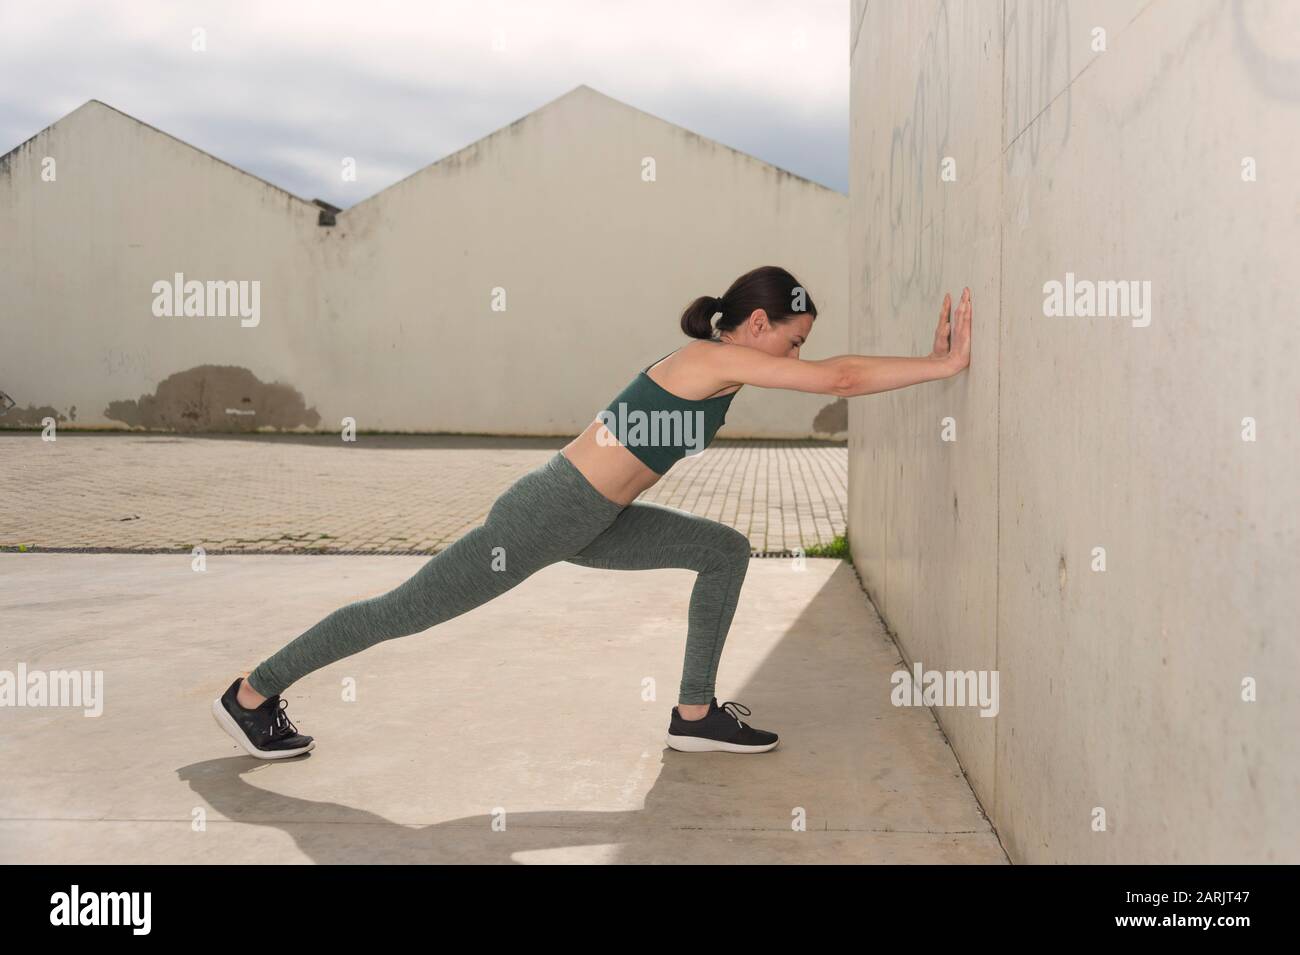 Sportlerin streckt Arme und Beine, Aufwärmübungen, konkrete urbane Umgebung. Stockfoto